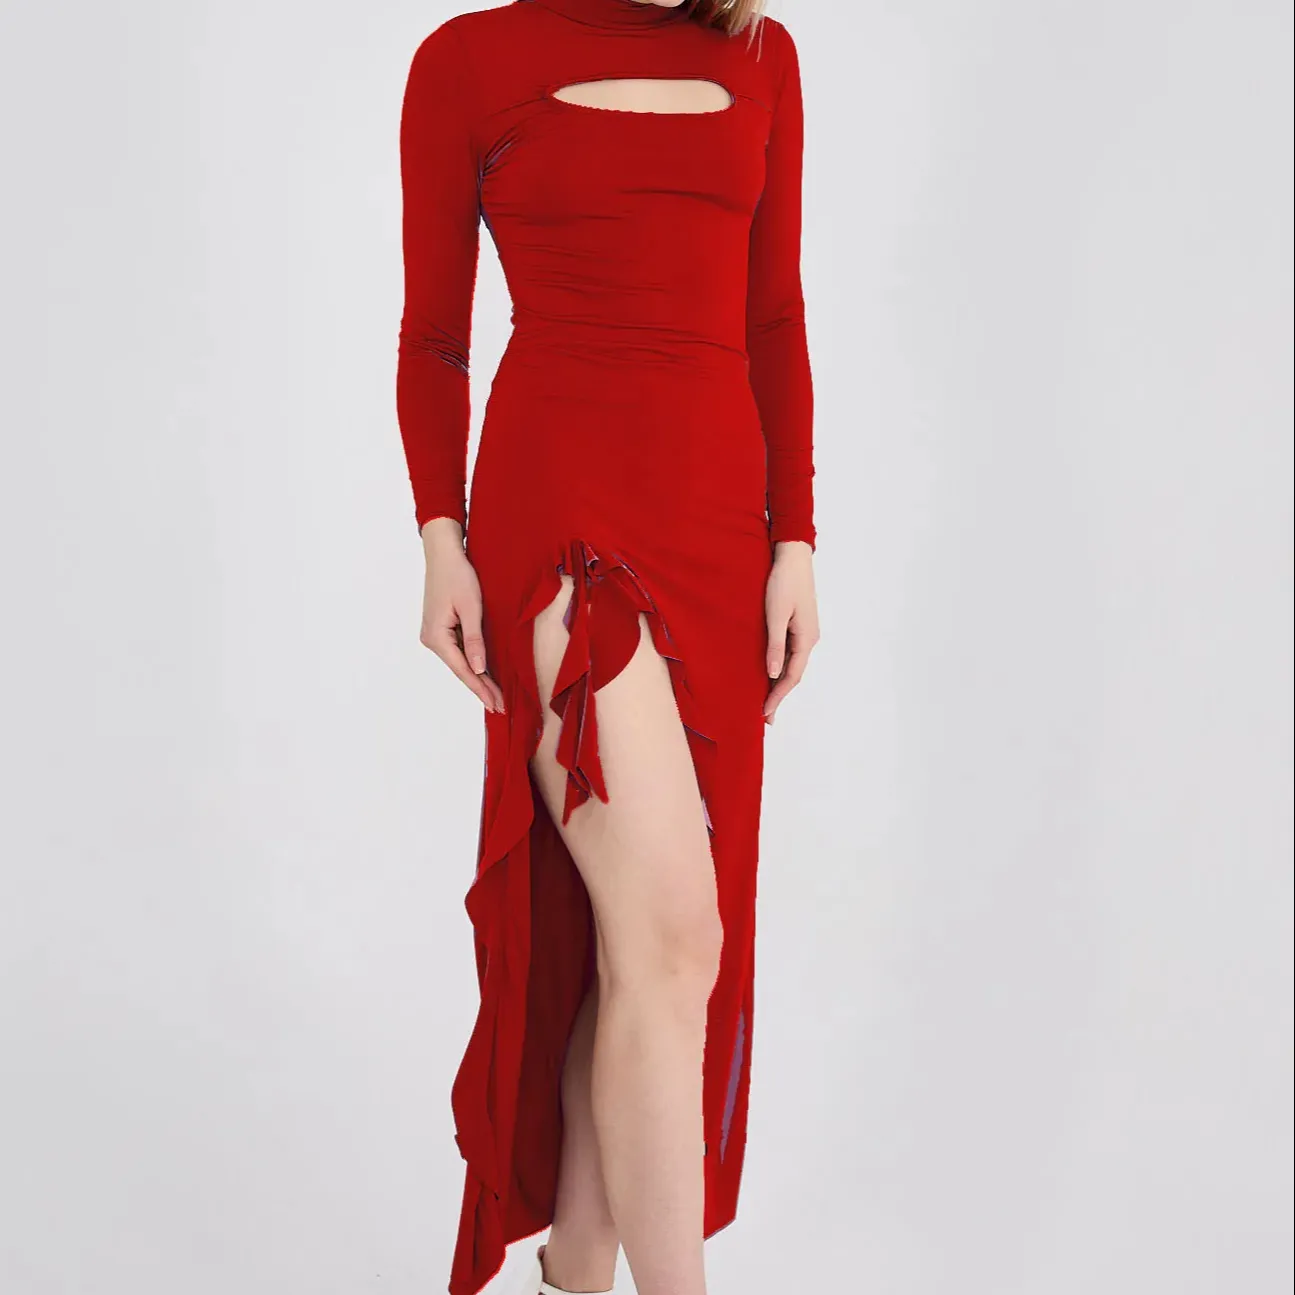 Красное песочное платье с длинным рукавом с прорезями с обеих сторон красный цвет соответствует размеру